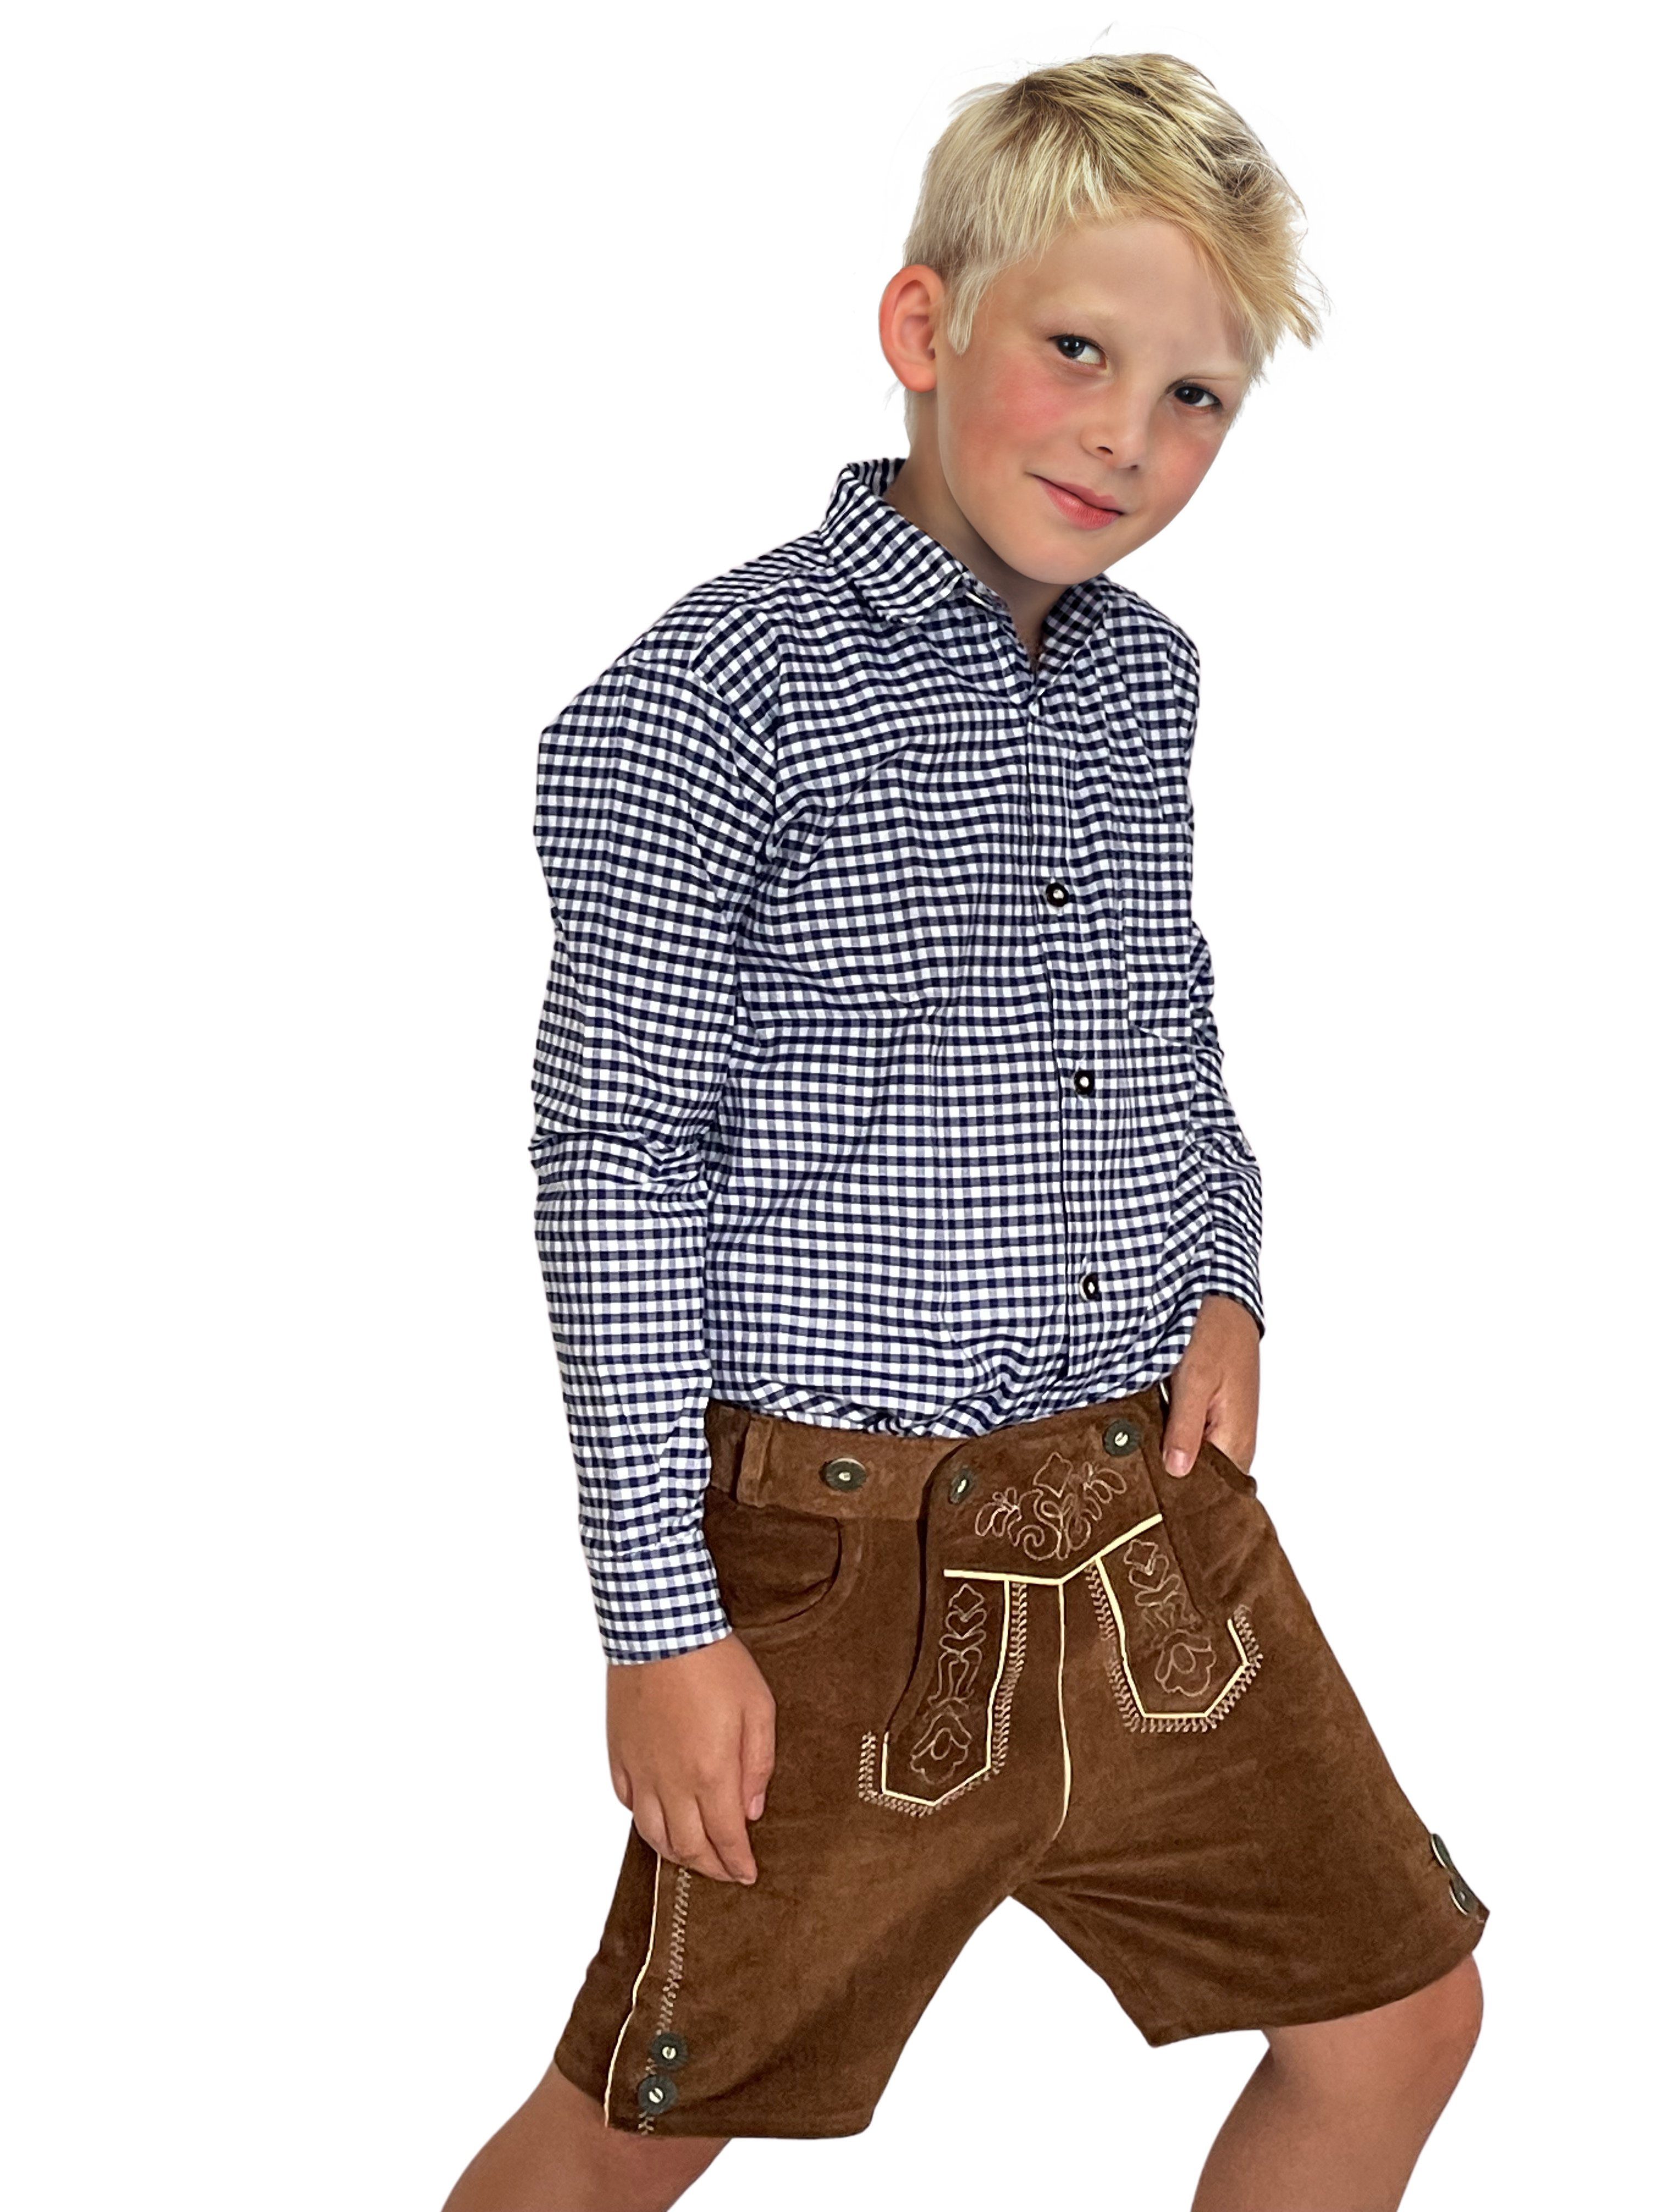 Trachterbahn Trachtenhemd Trachtenhemd Junge kariert Baumwolle langarm mit Halstuch 45x45 cm dunkelblau kariert